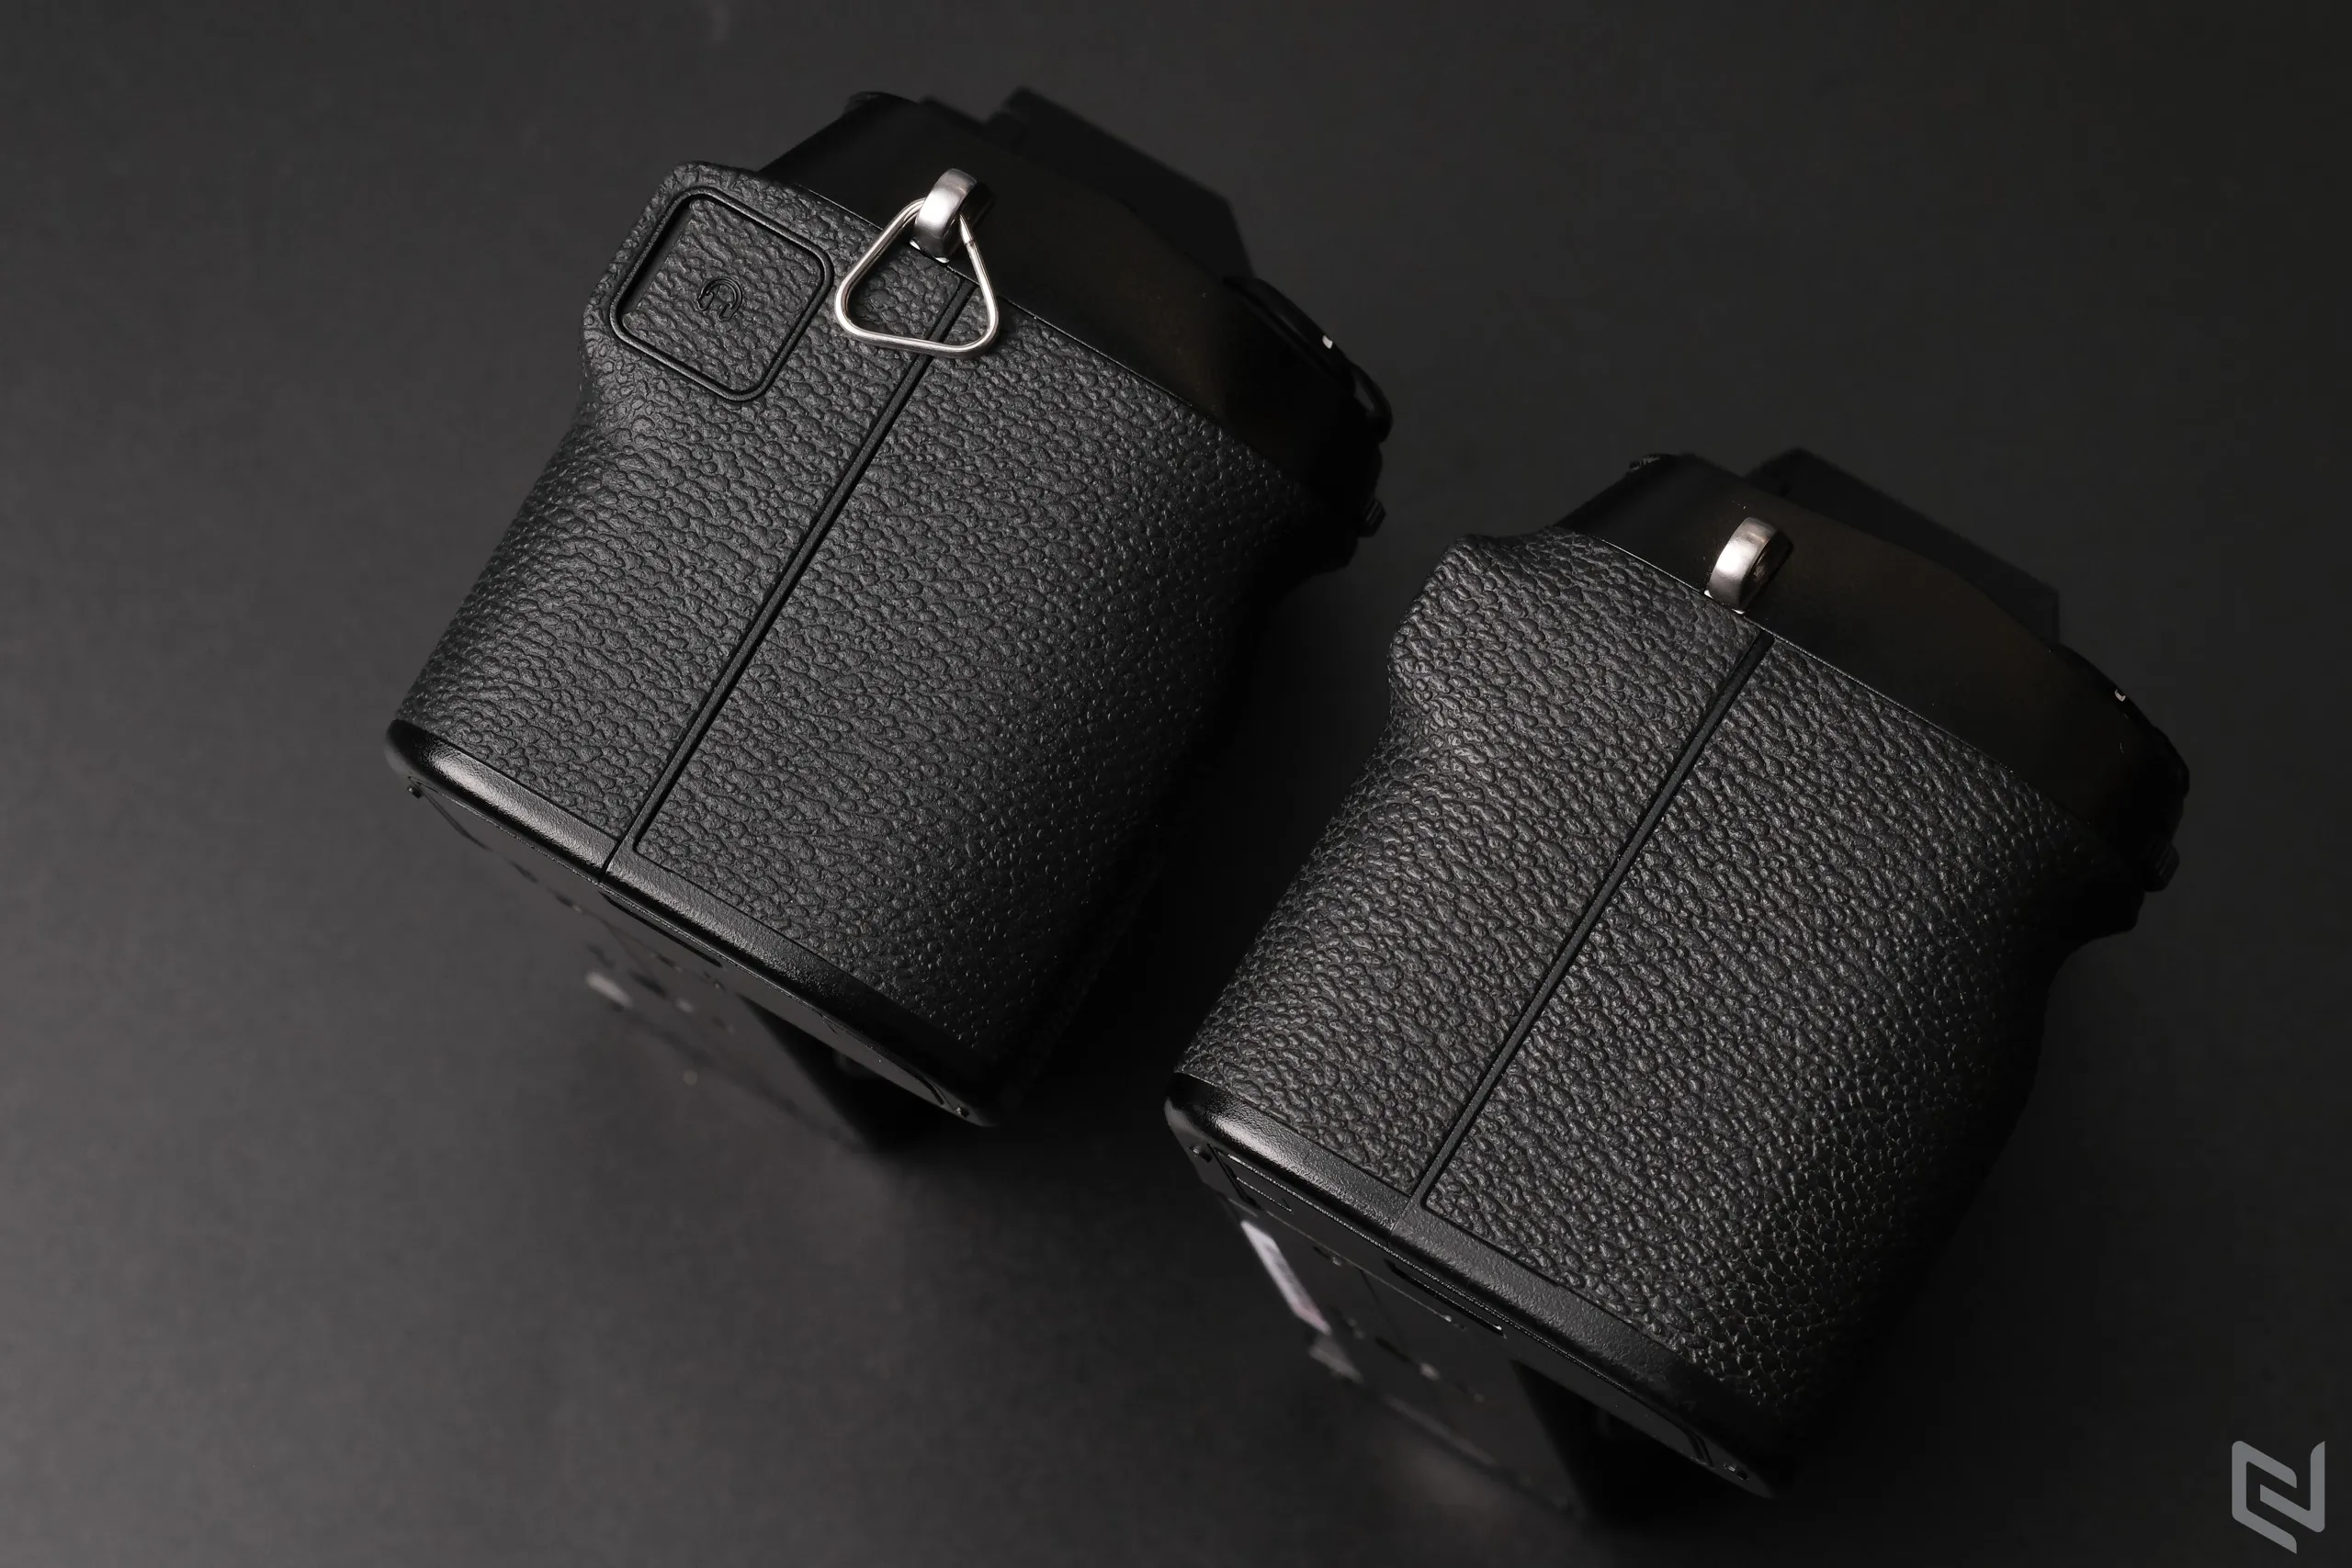 Đánh giá máy ảnh Fujifilm X-S20: Nâng cấp vi xử lý, chống rung và pin tốt hơn